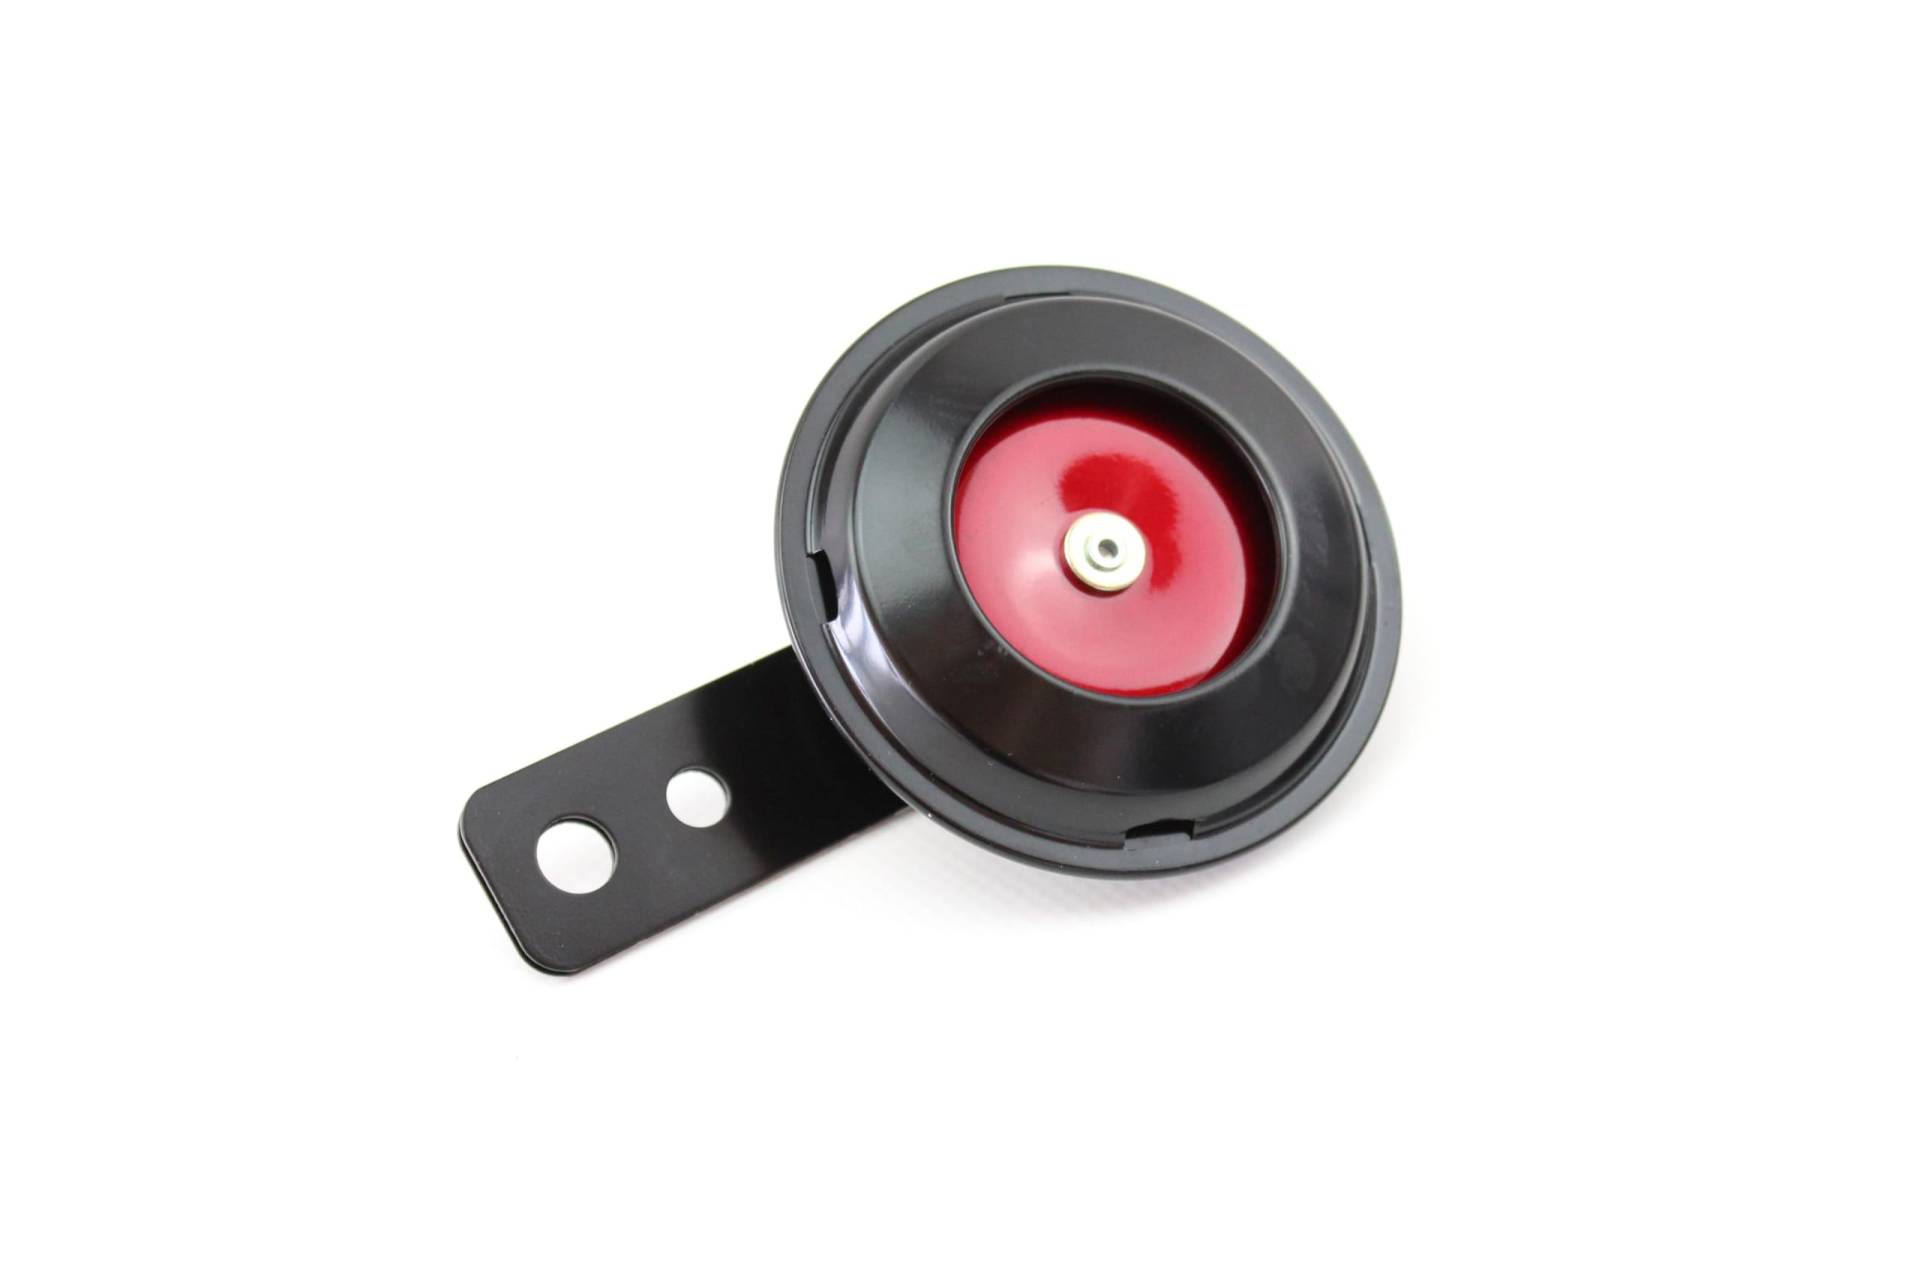 Hupe Signalhorn 12V universal schwarz und rot lackiert Lautstärke bis zu 105 dB Gleichstrom für Moped Quad Mofa von BISOMO